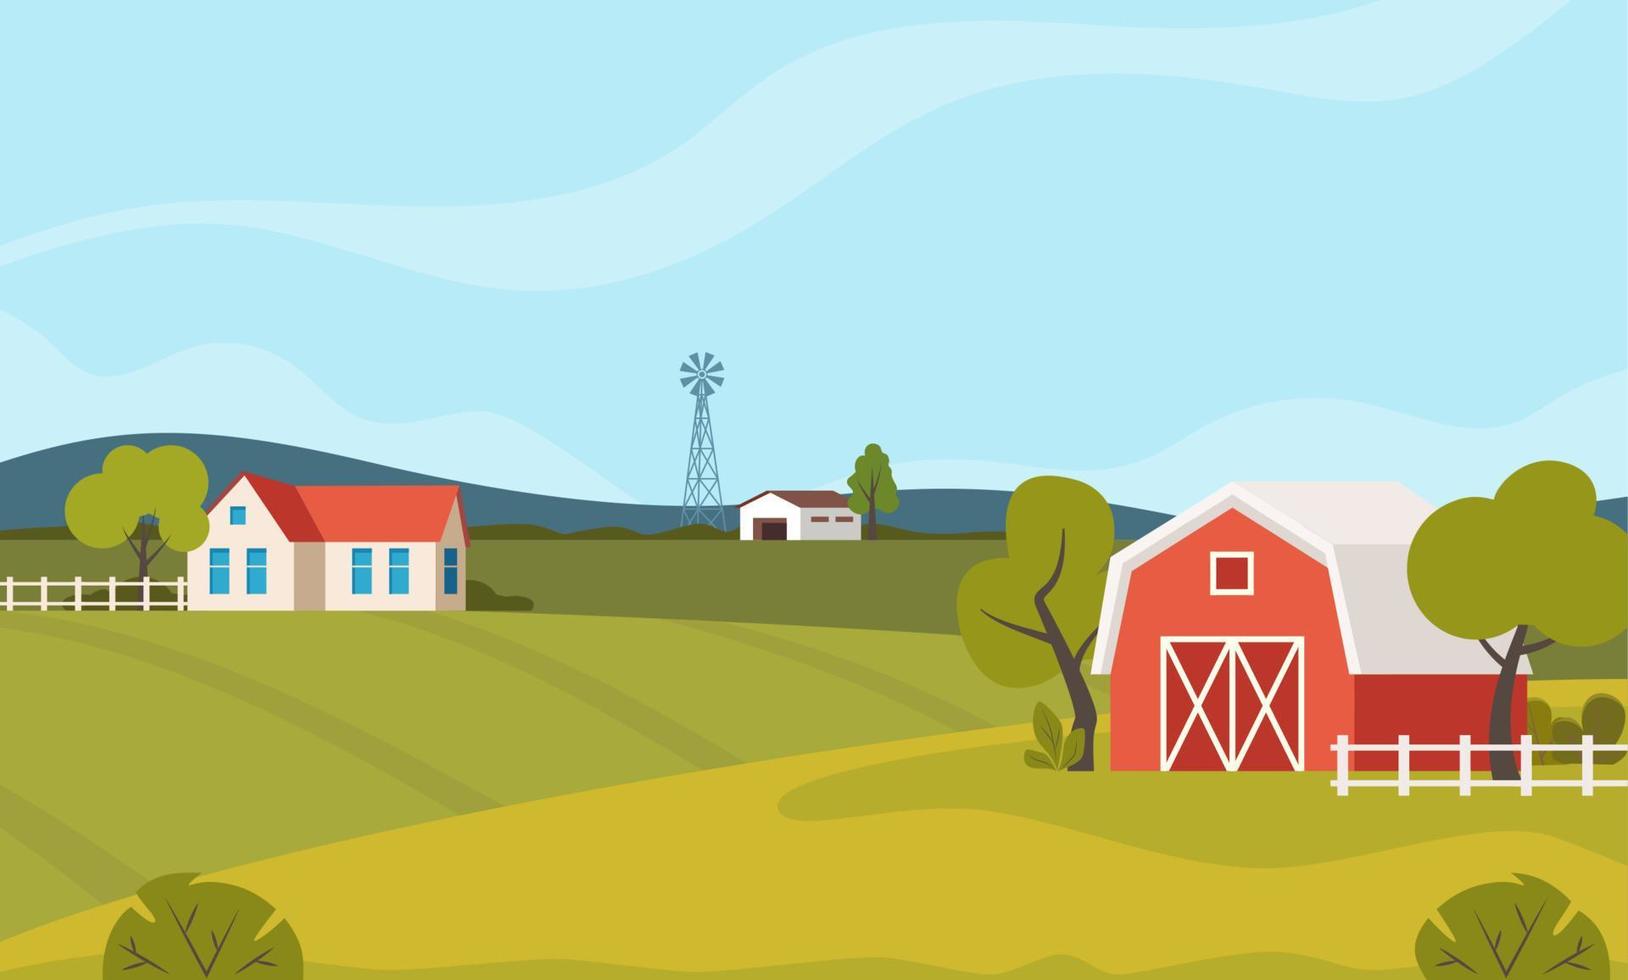 cena de fazenda com celeiro vermelho e moinho de vento, árvores, cerca, palheiro. paisagem rural. agricultura e conceito de agricultura. ilustração em vetor bonito.